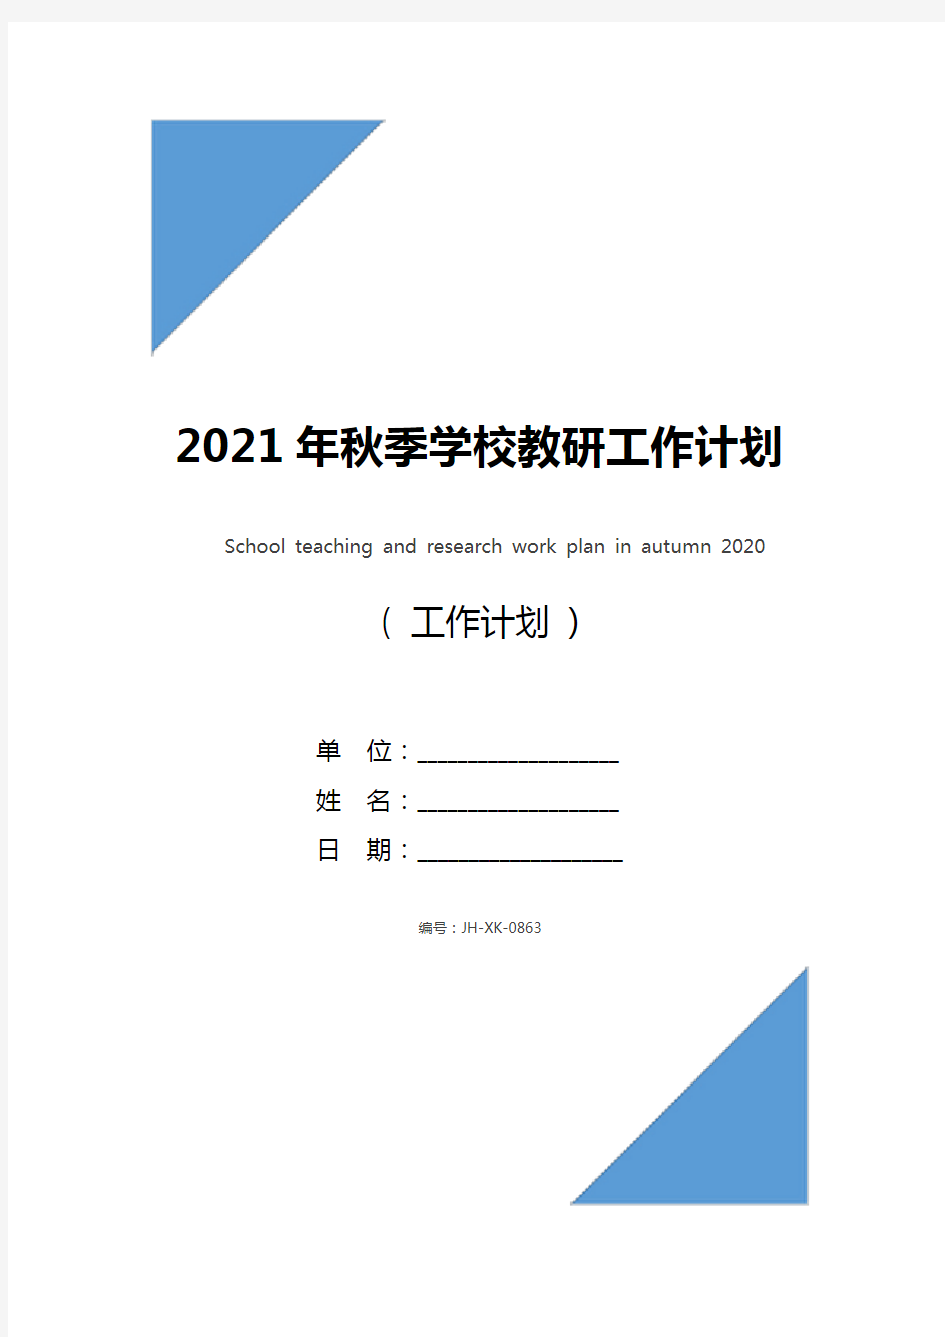 2021年秋季学校教研工作计划(新版)